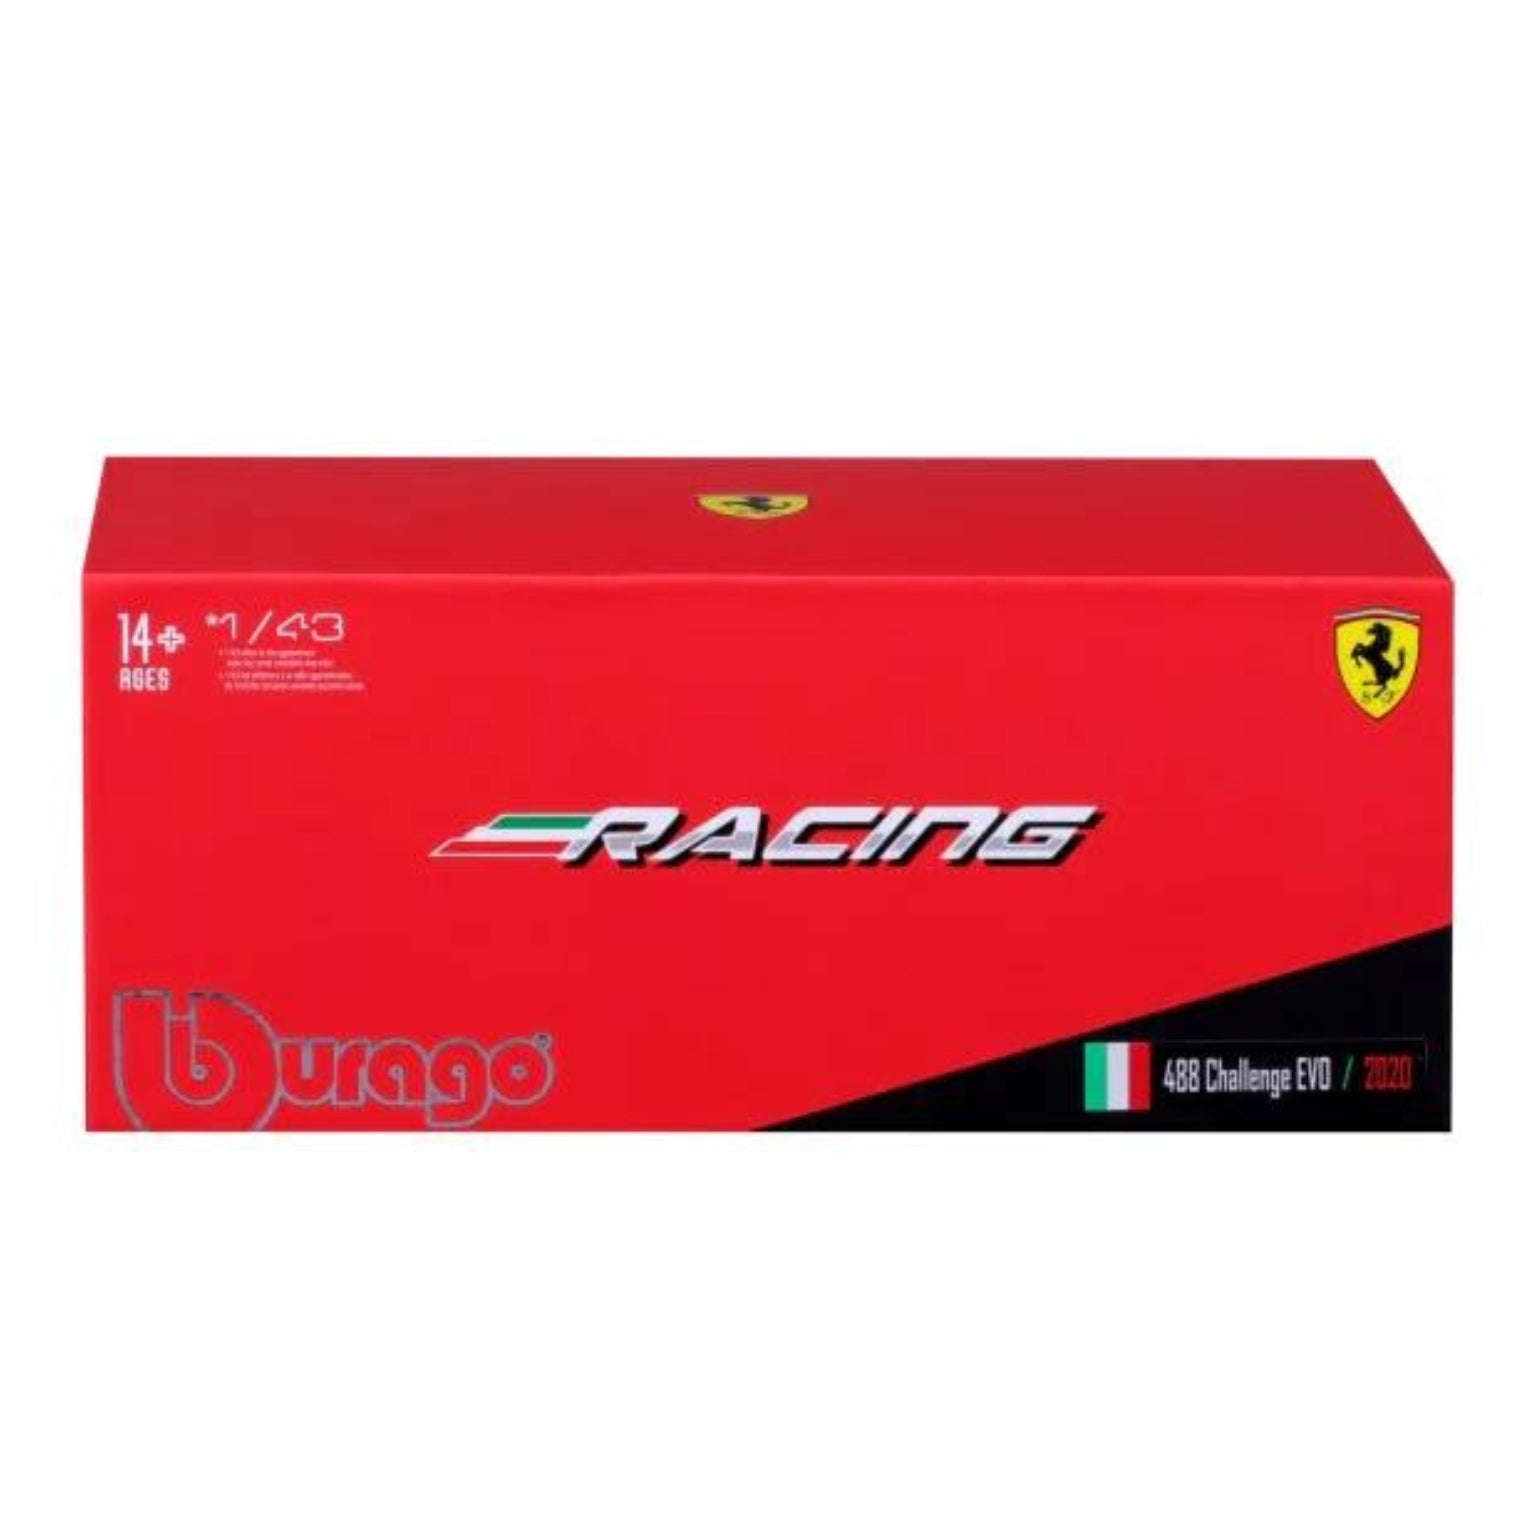 carro de brincar Ferrari Racing 488 Challenge 